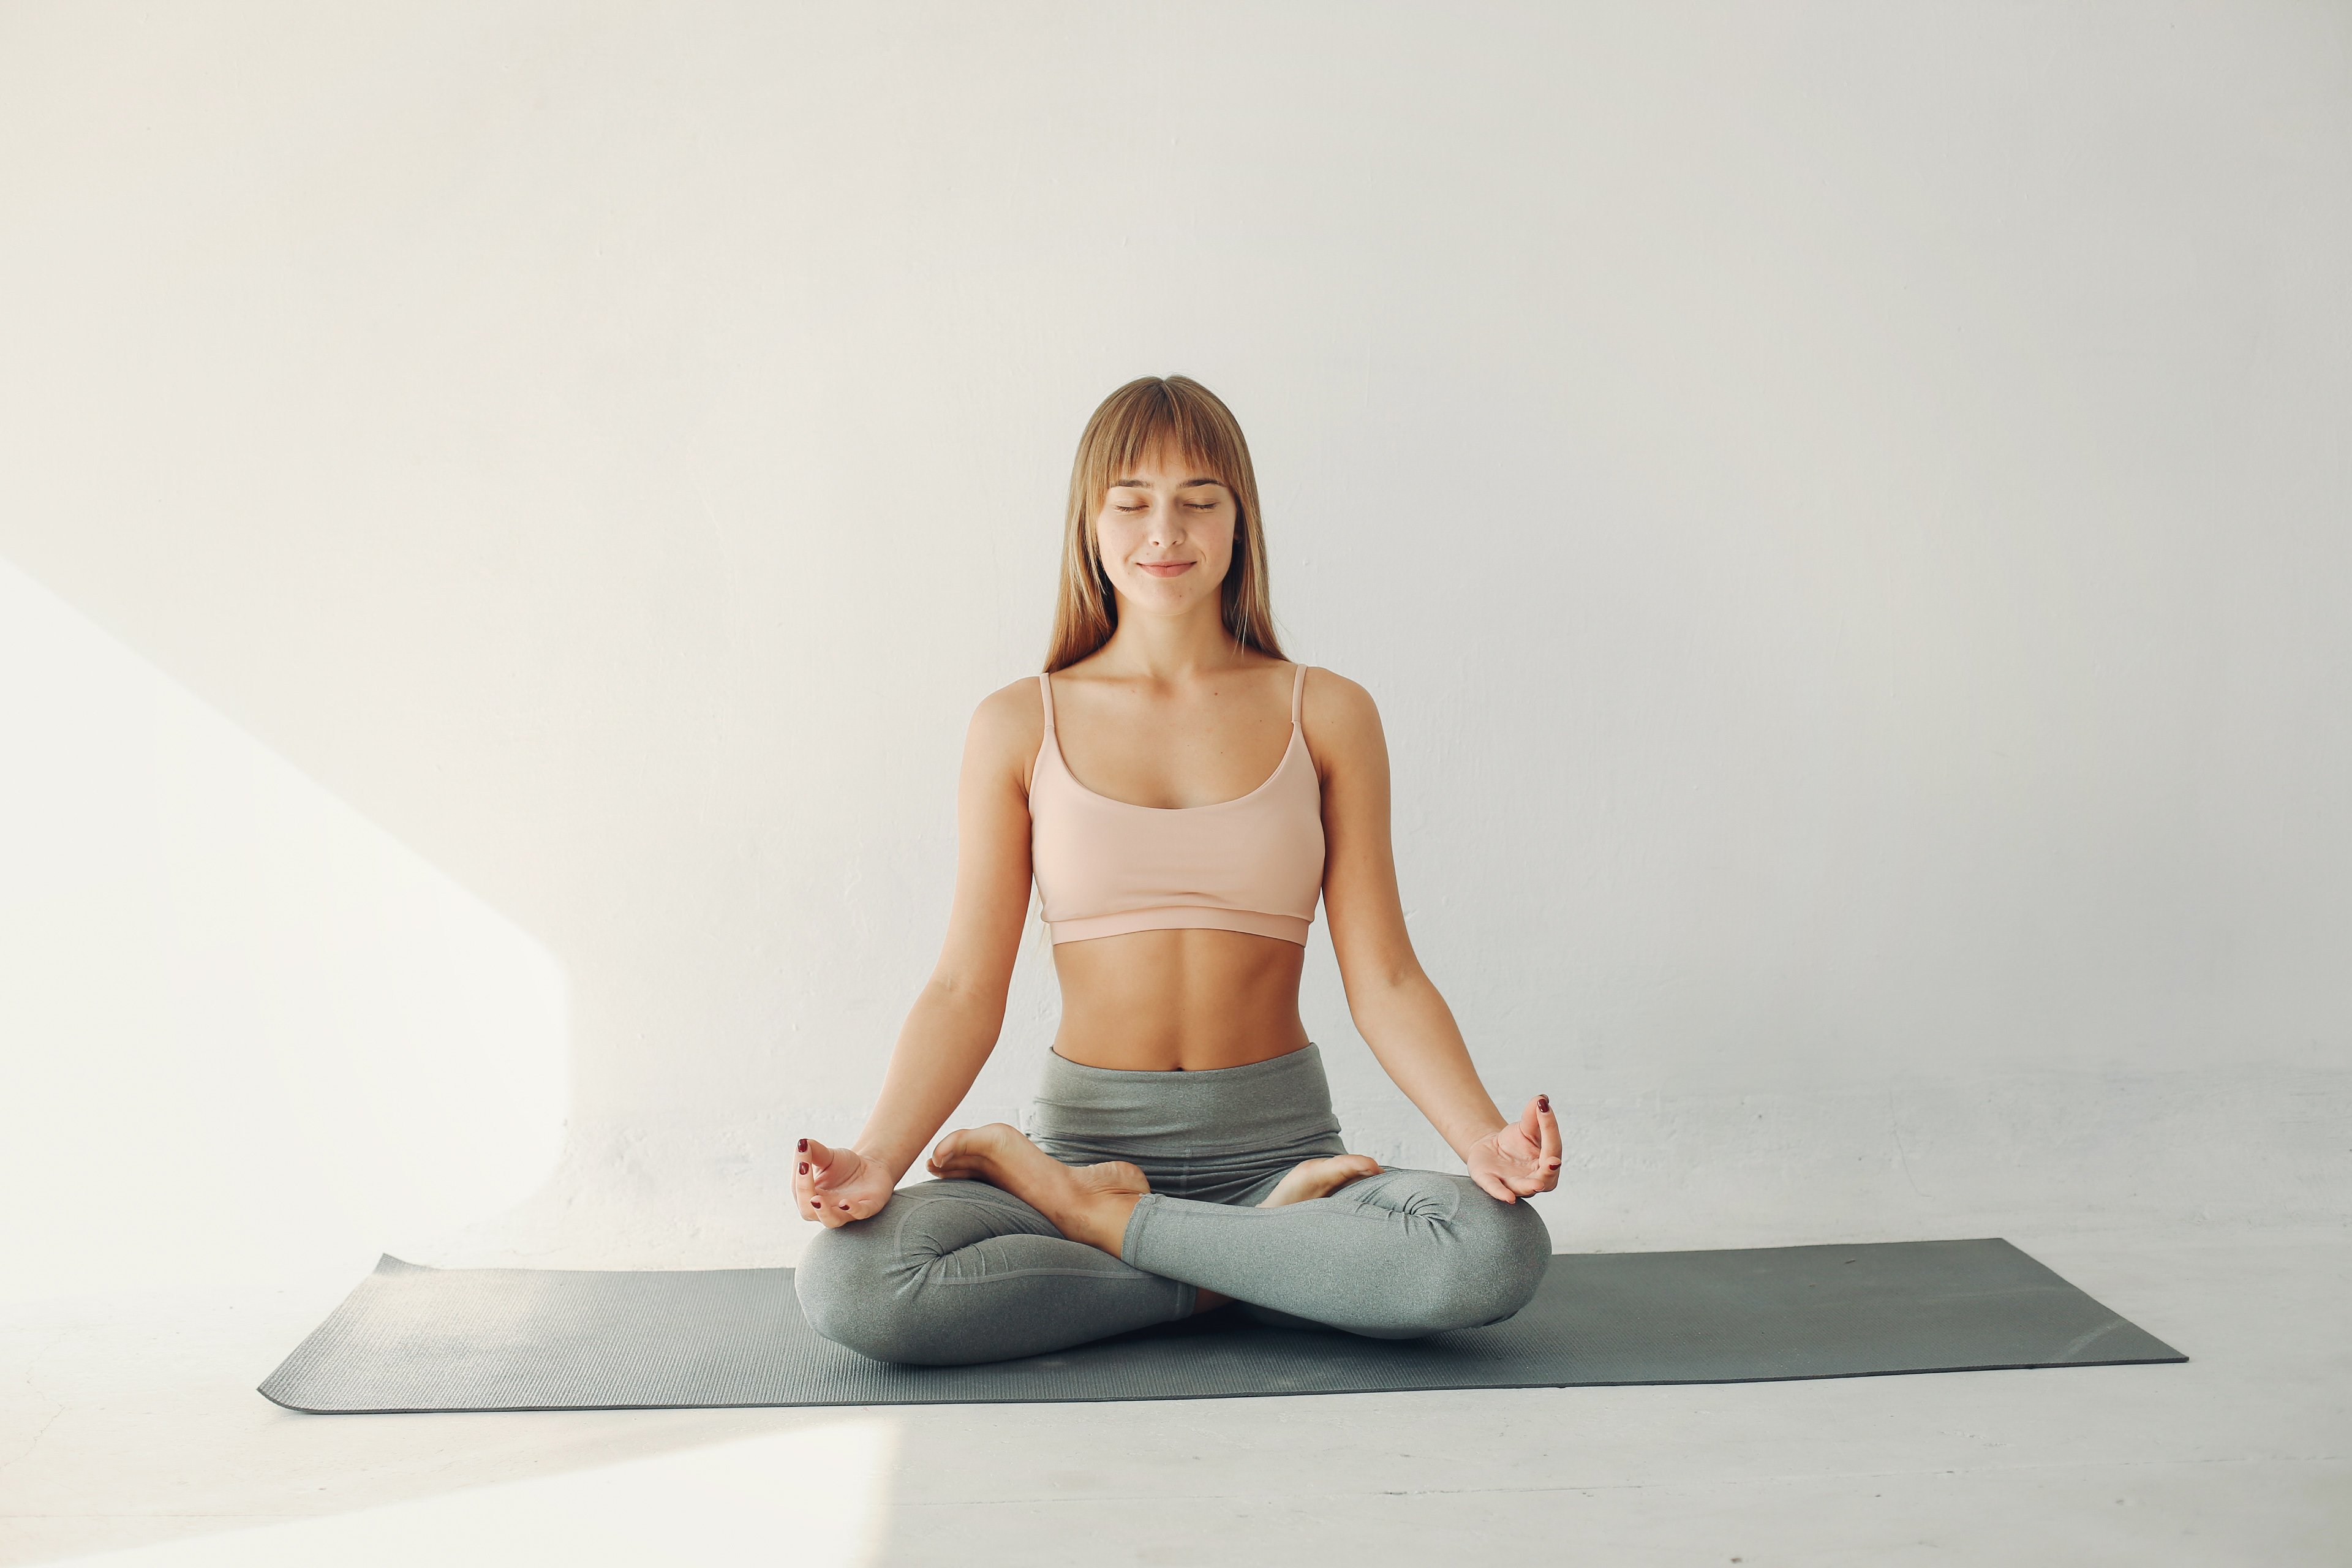 Como praticar yoga? Descubra algumas dicas